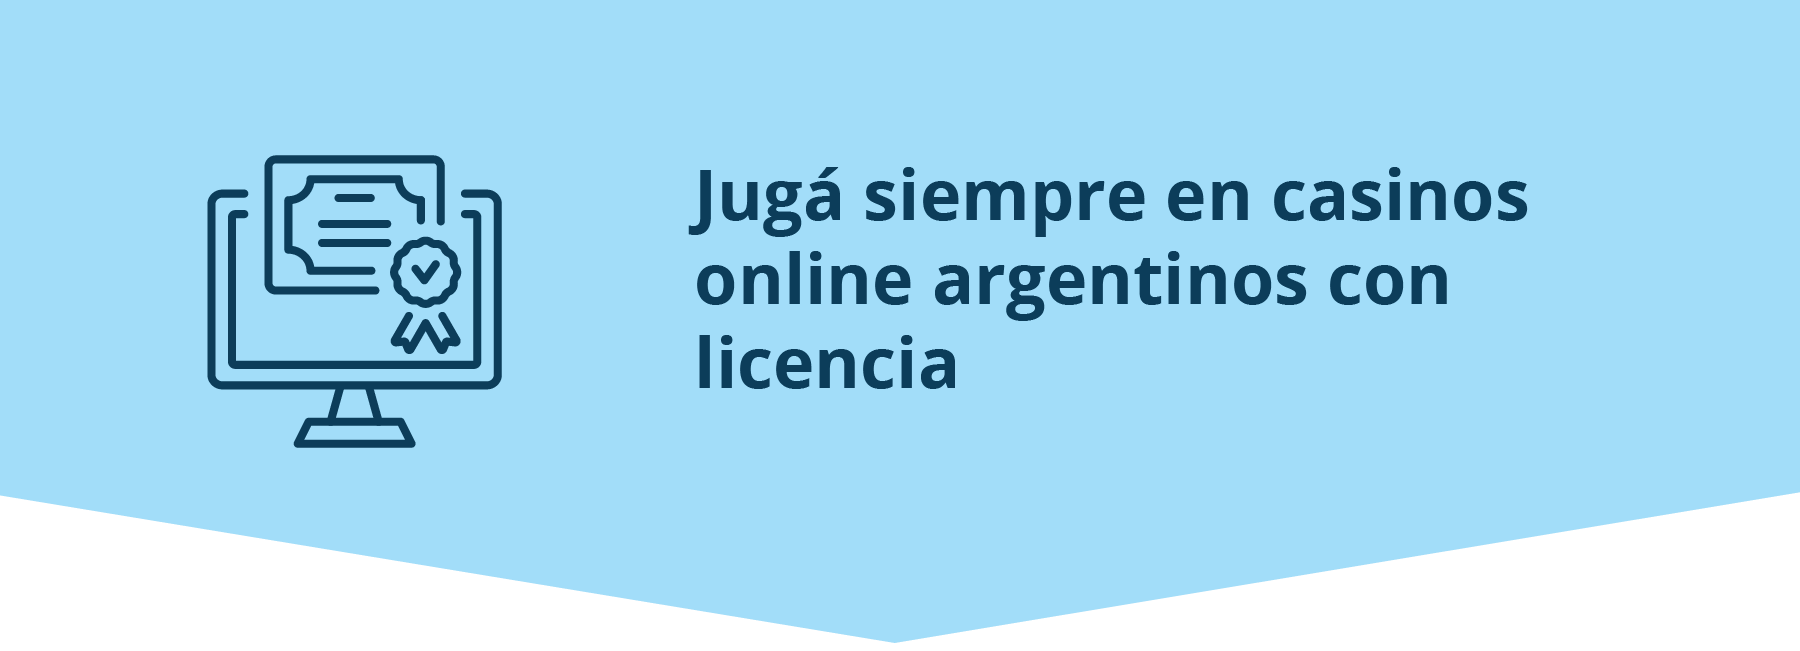 Casinos argentinos con licencia